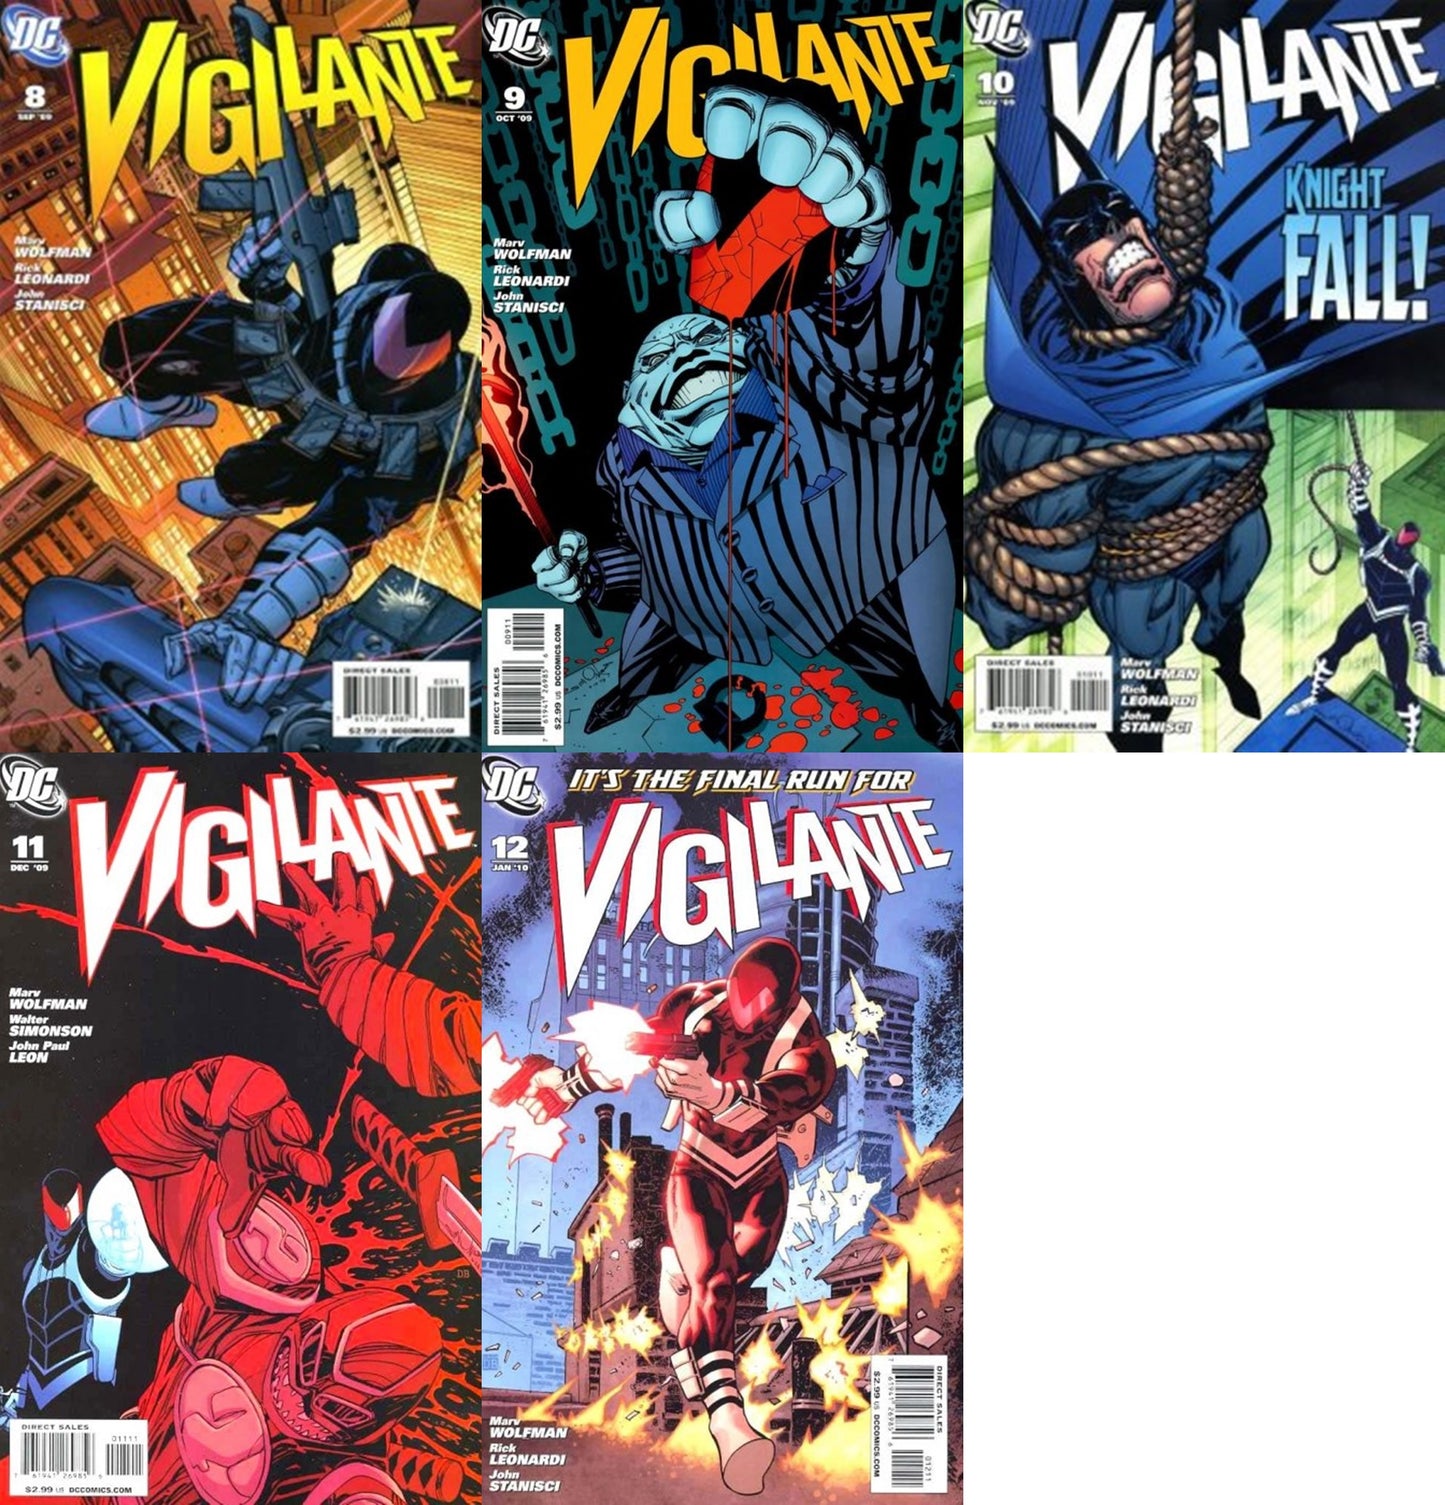 Vigilante #8-12 Volume 3 (2009-2010) DC Comics - 5 Comics